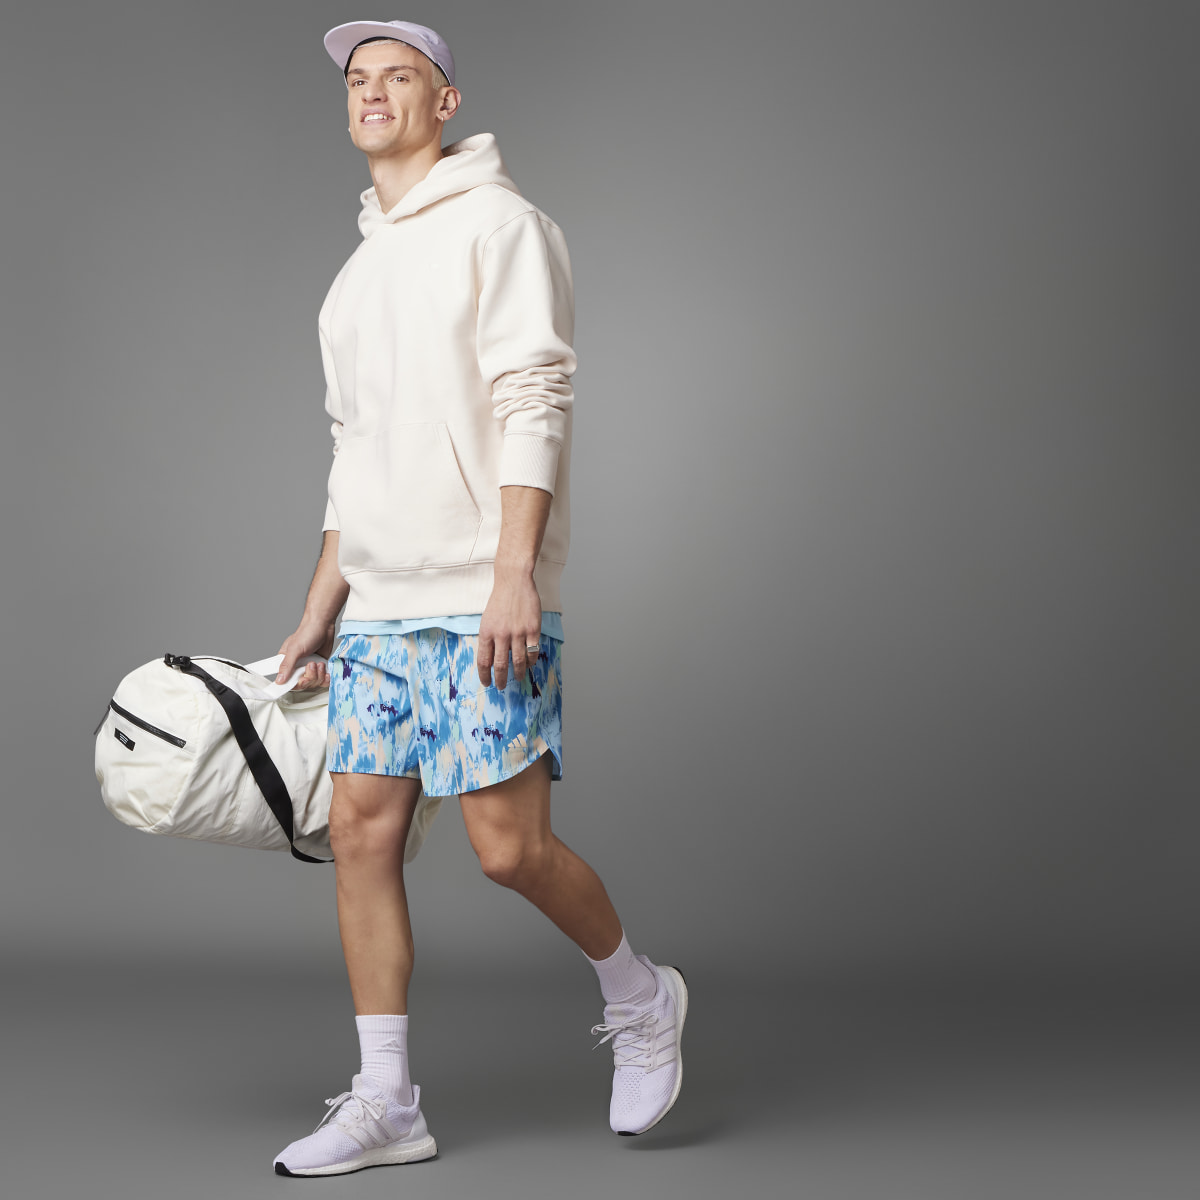 Adidas Lift Your Mind Designed for Training Shorts. 4